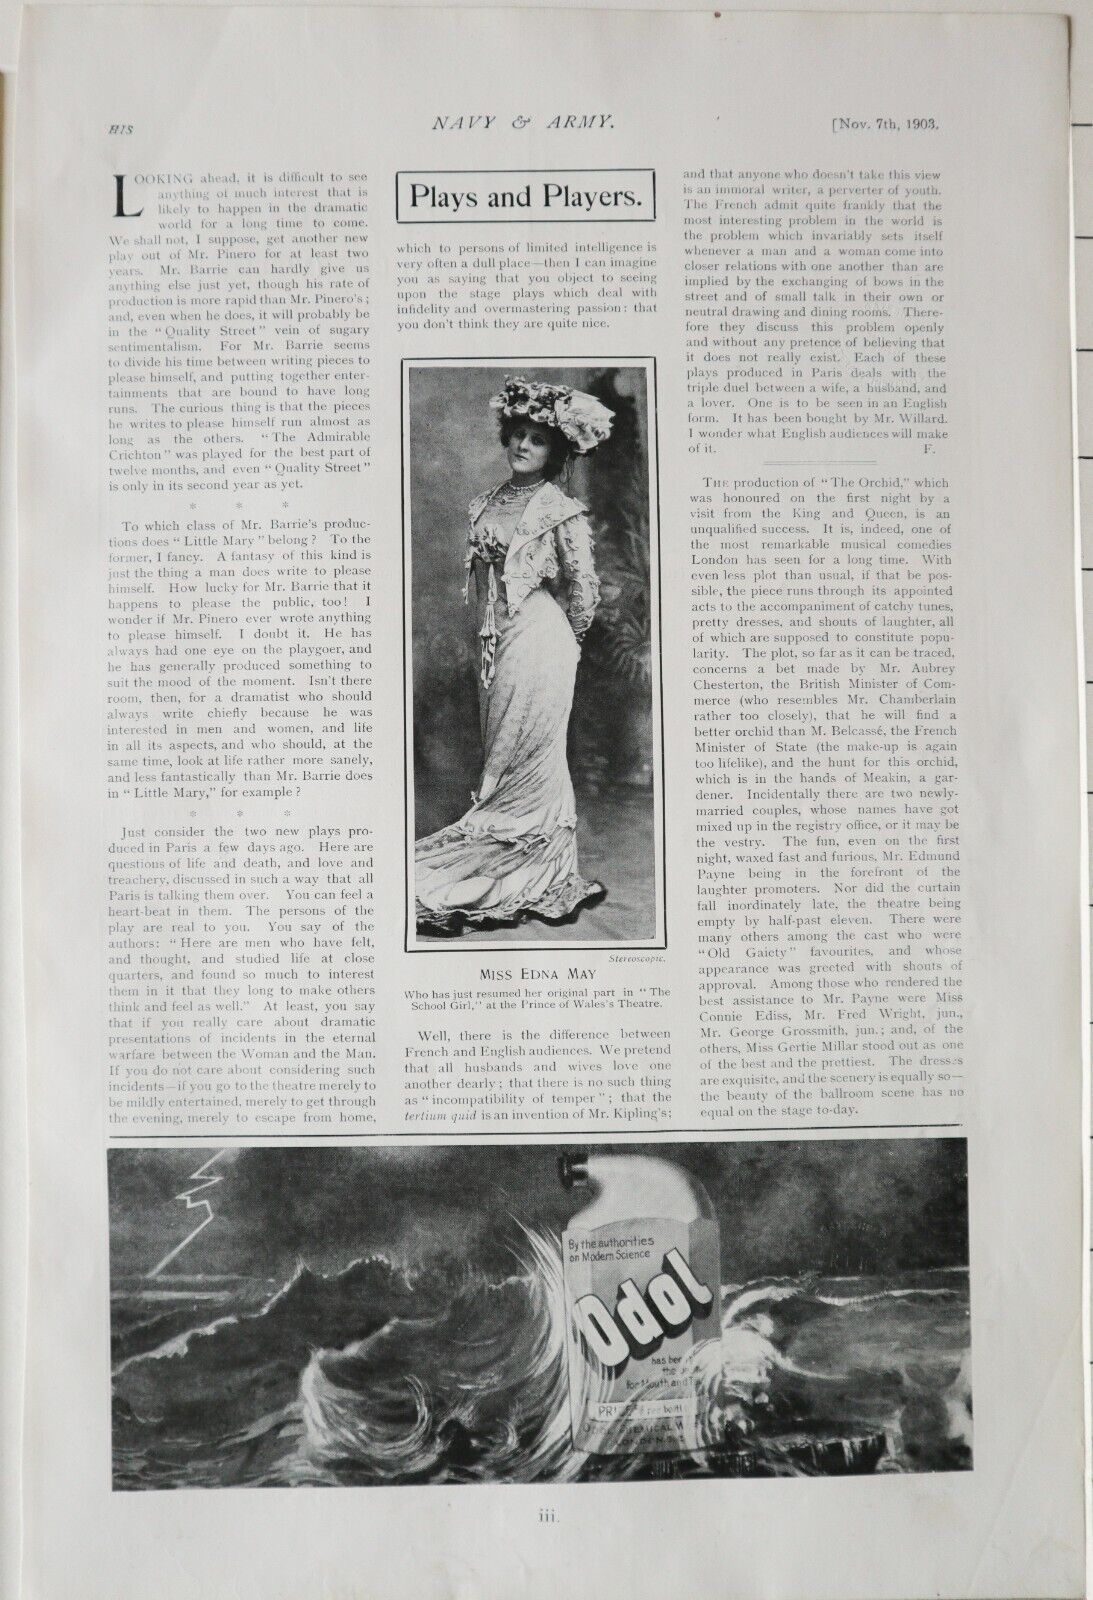 Image of 1903 Aufdruck Theater Spielt & Miss Edna May Die Schulmädchen Prinz von Wales